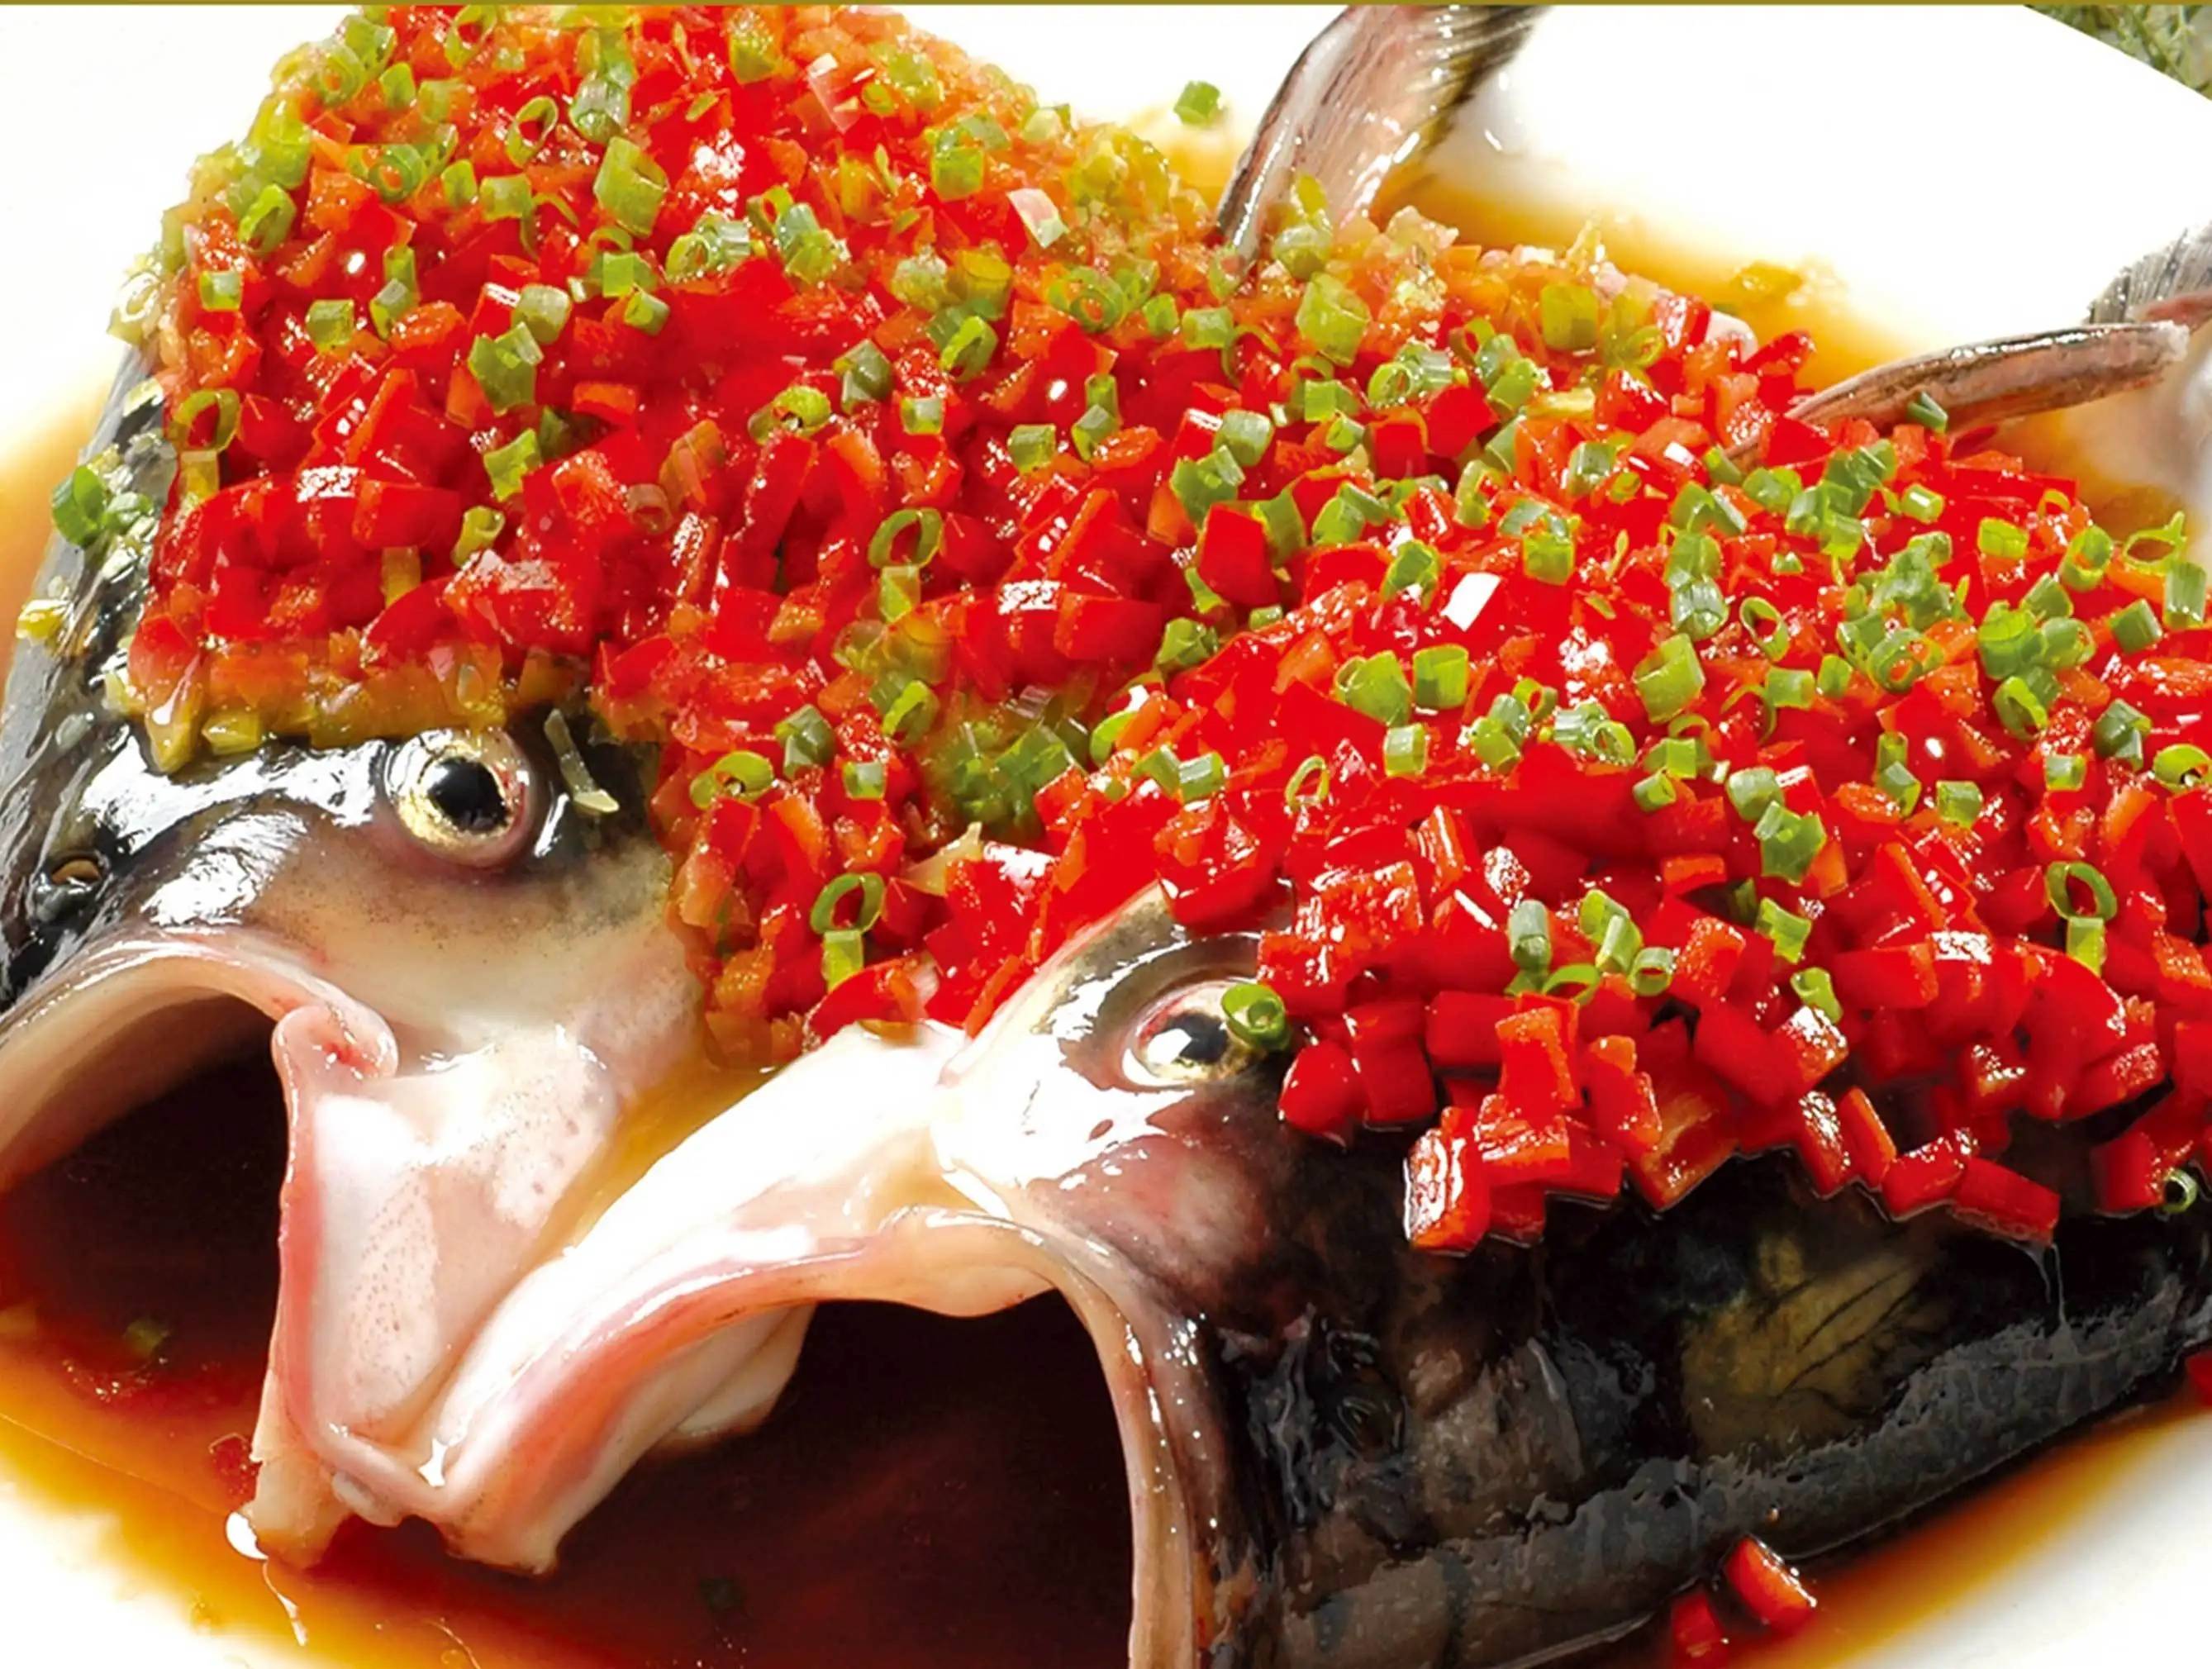 肥而不腻,口感软糯,鲜辣适口——湘菜系剁椒鱼头的历史典故